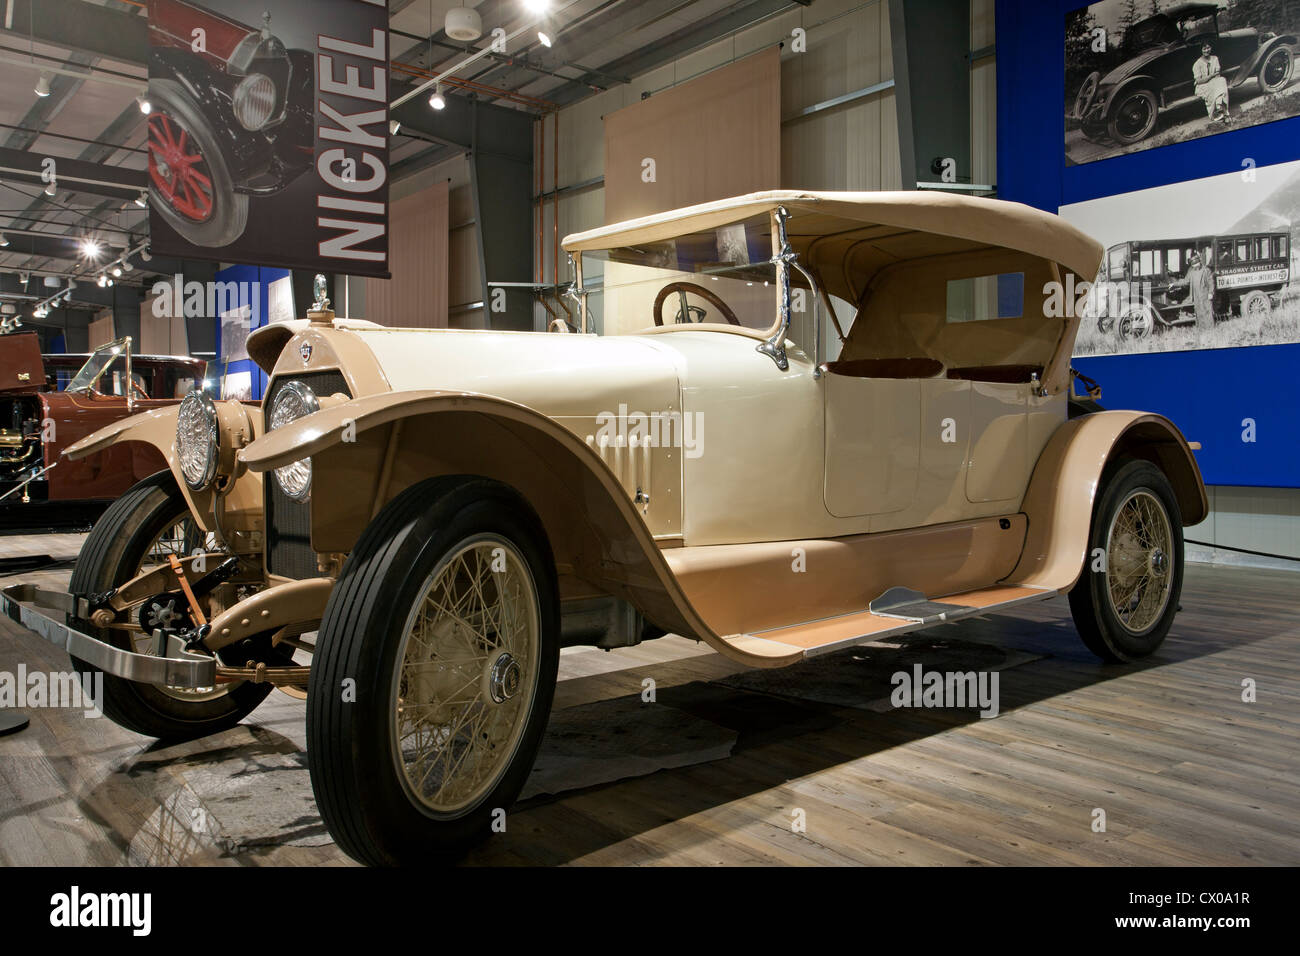 1918 Stutz S Série Spéciale Bouledogue. Fountainhead Antique Auto Museum. Fairbanks. De l'Alaska. USA Banque D'Images